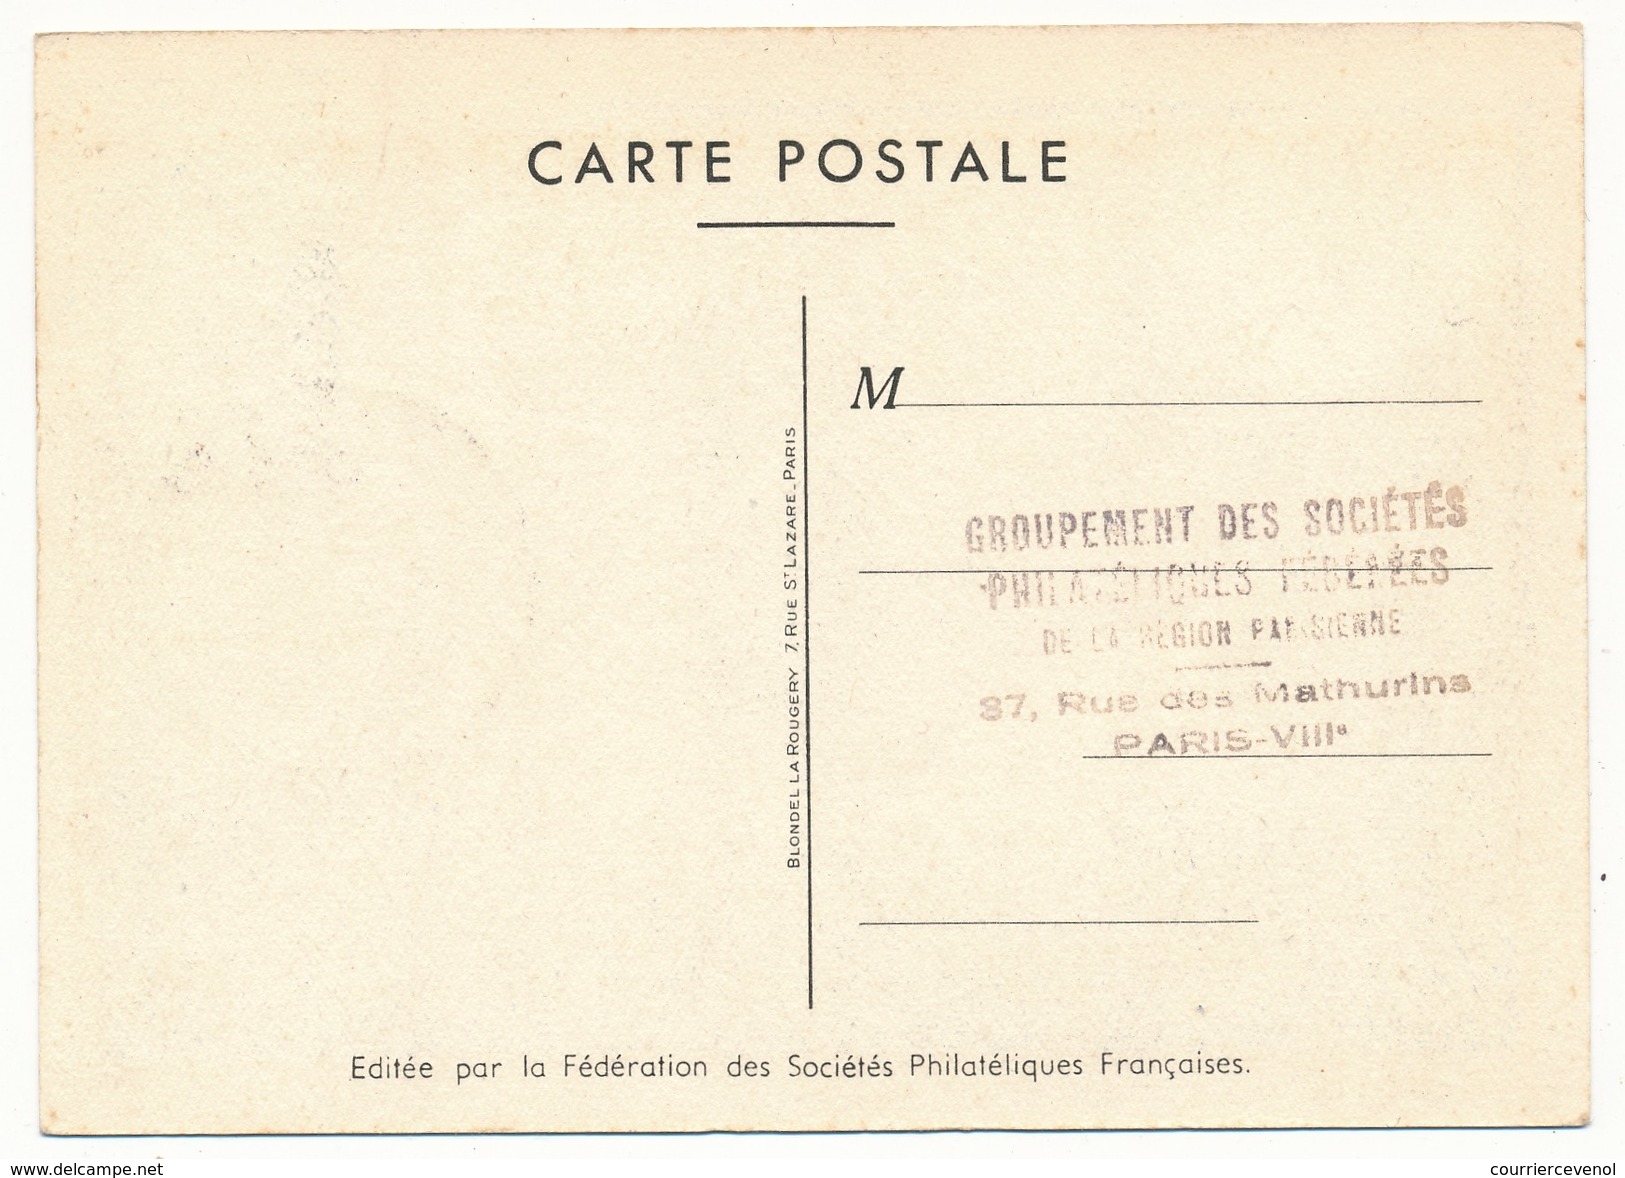 FRANCE - Carte Postale Dessin De Raoul Serres - Journée Du Timbre 1950 PARIS - Facteur Rural - Tag Der Briefmarke